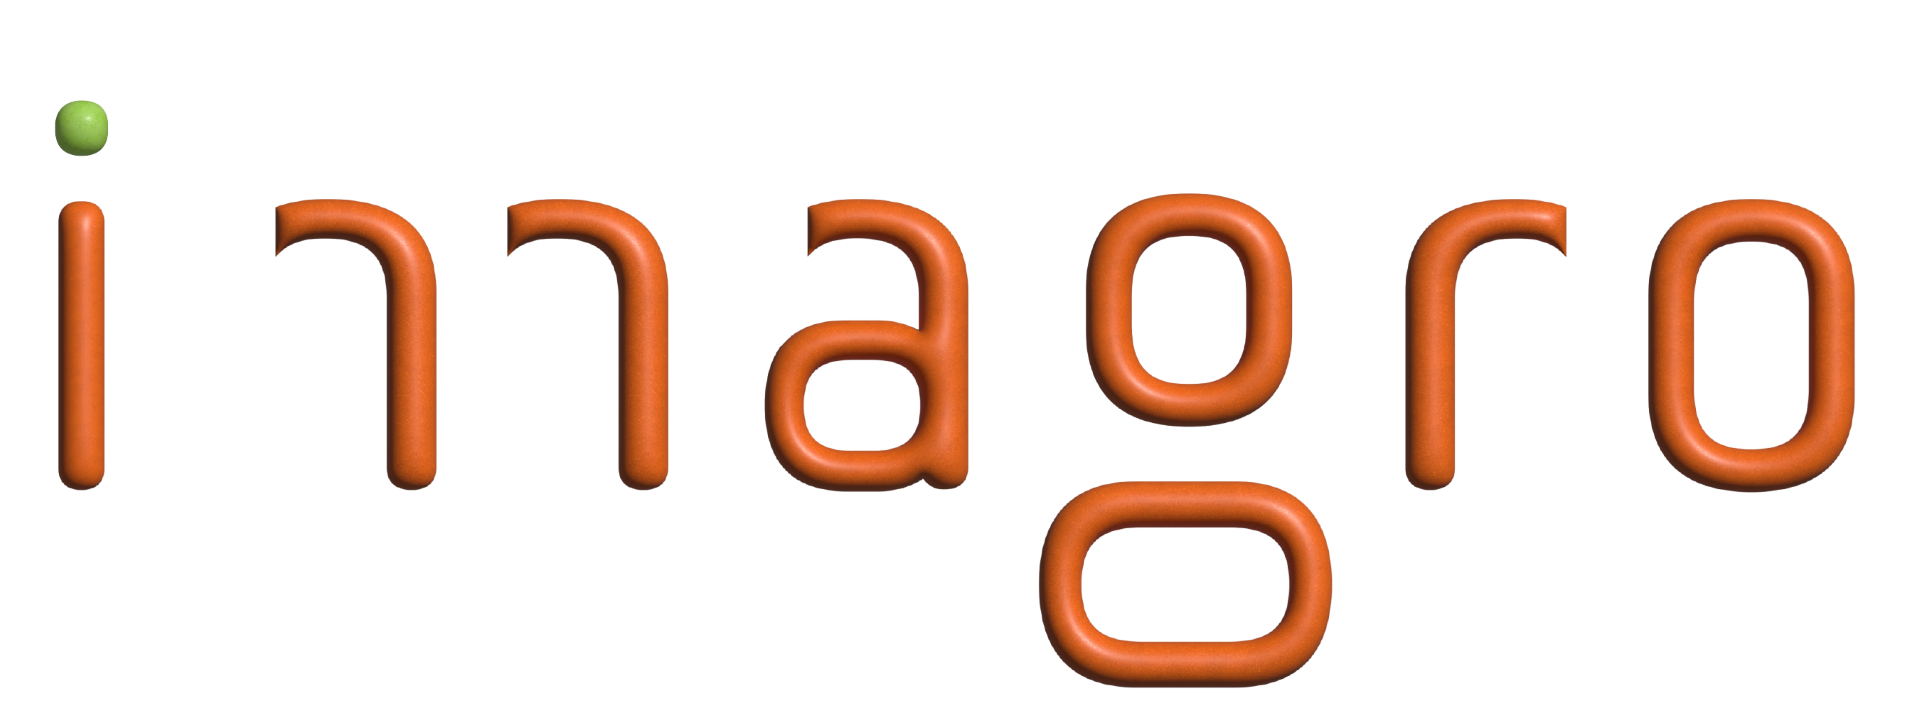 Imagro logo PNG